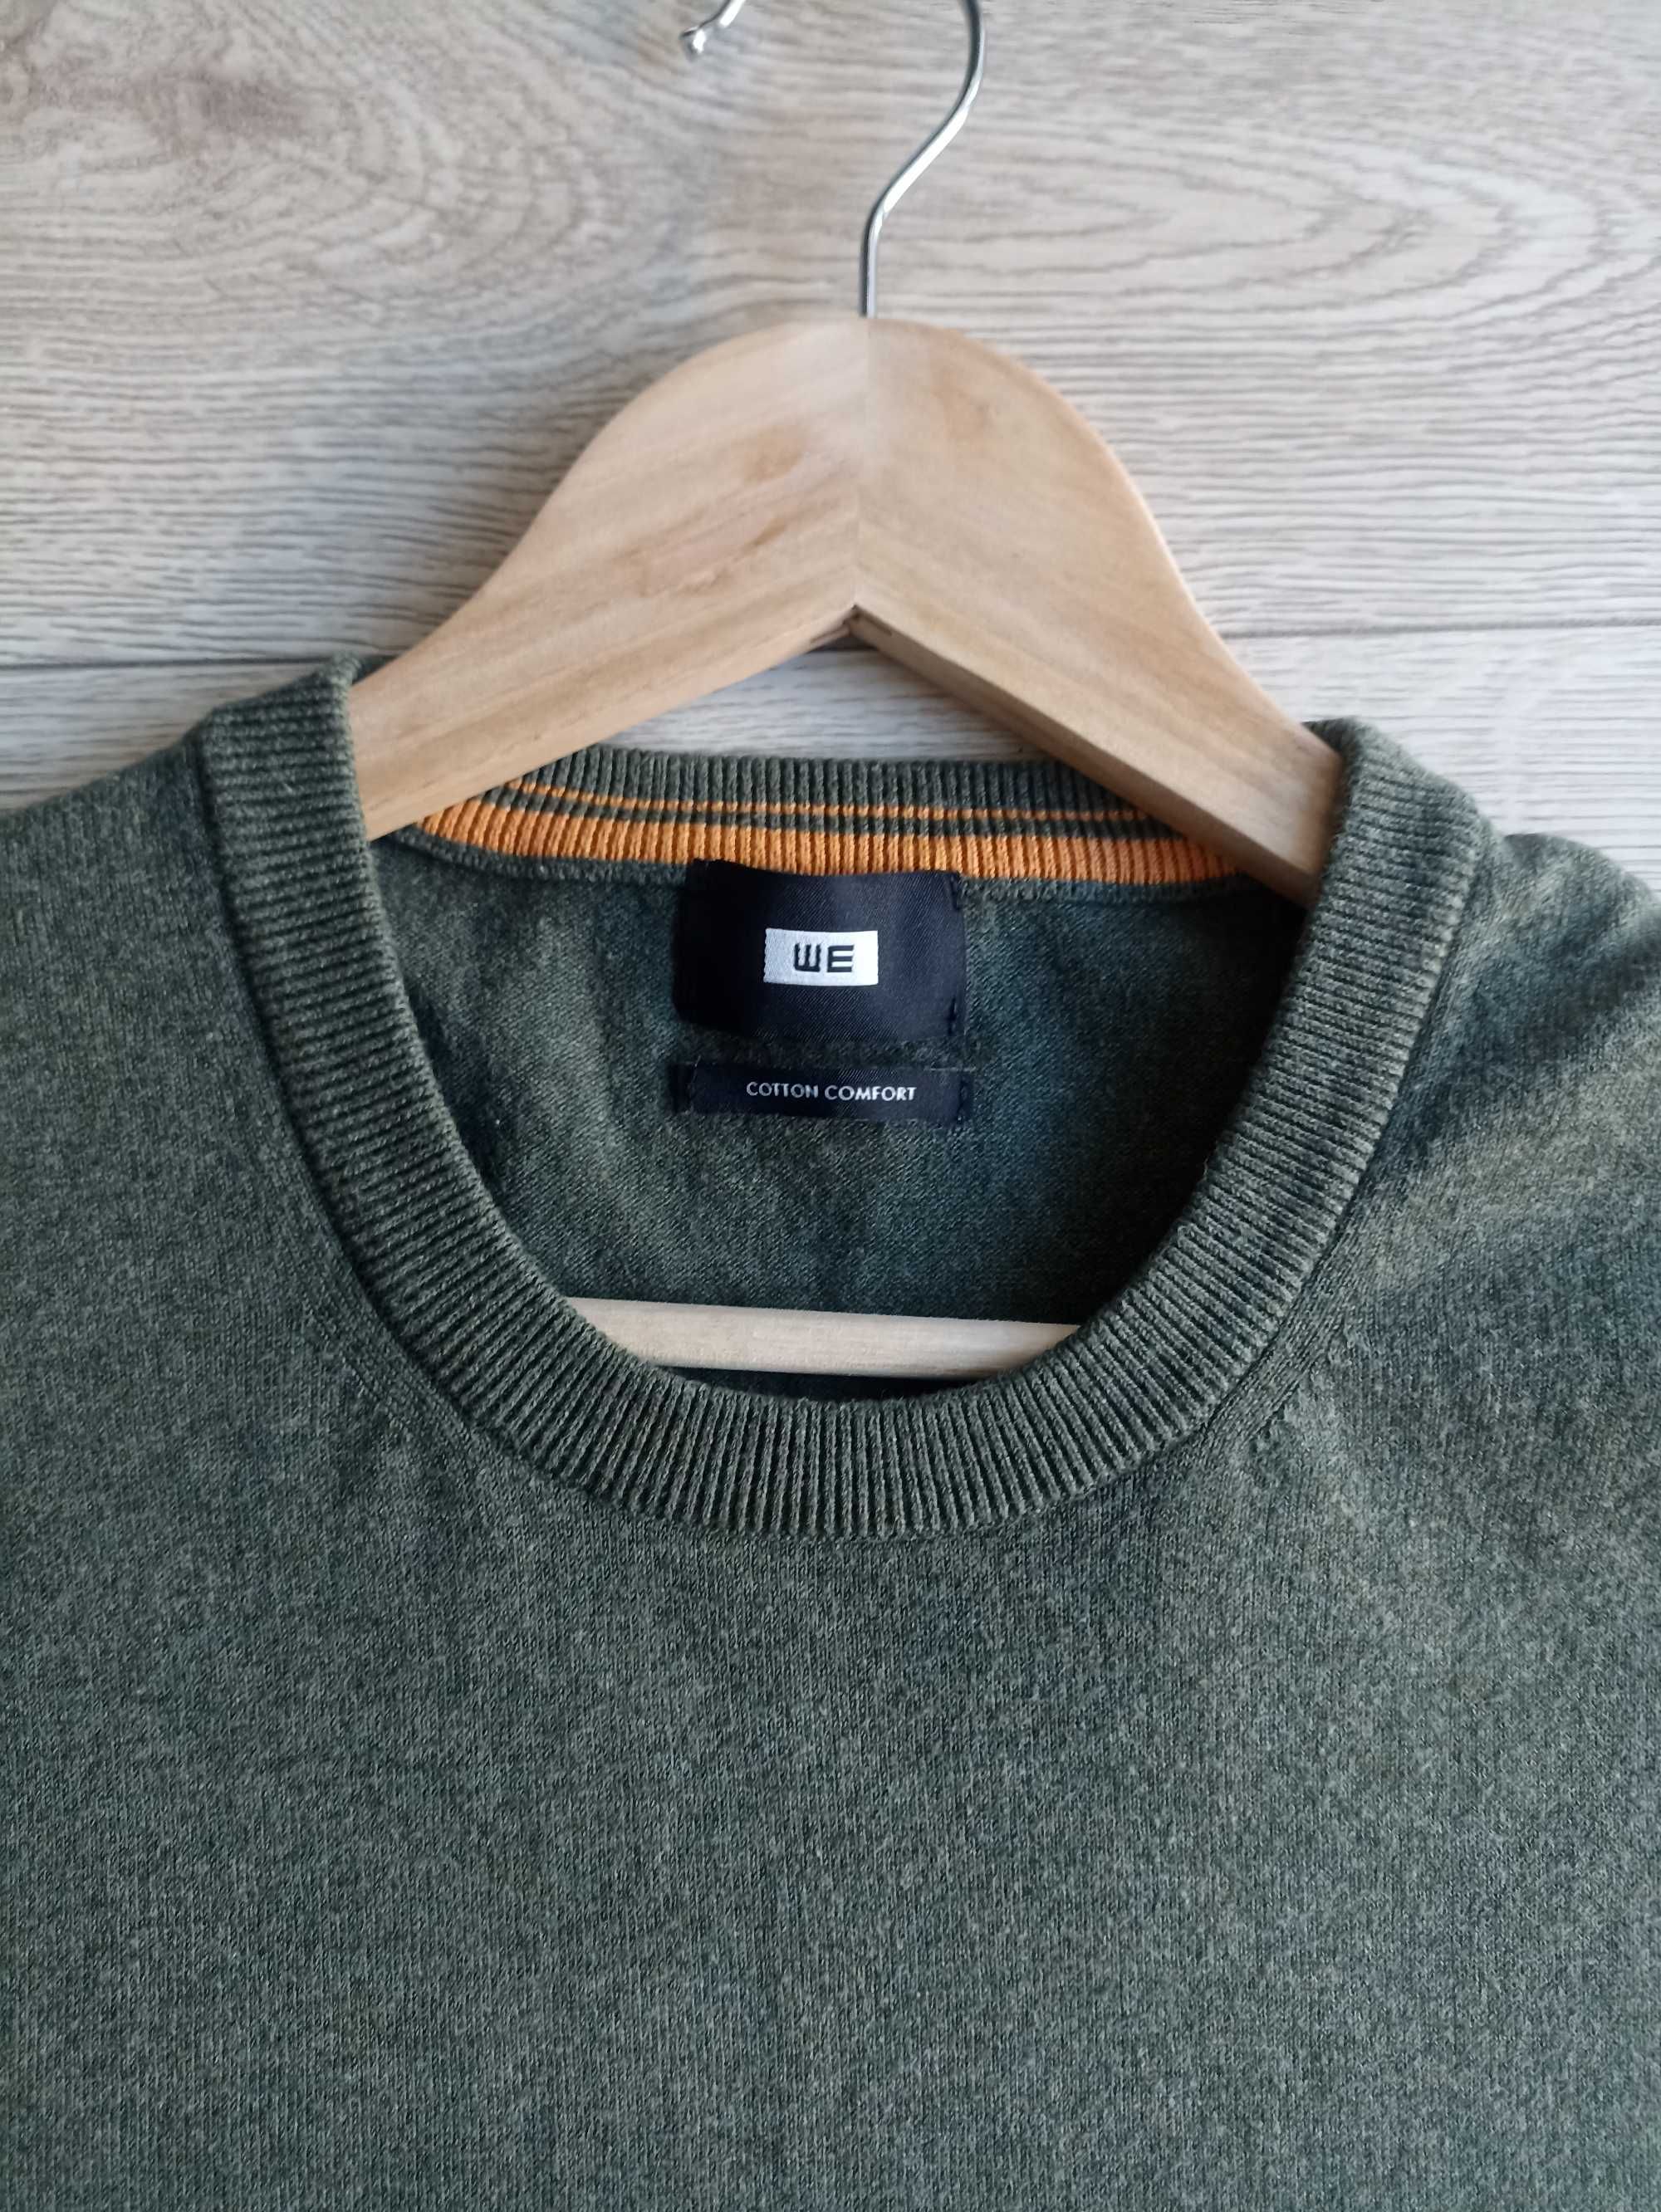 Męski sweter, WE, rozmiar L, w stanie idealnym